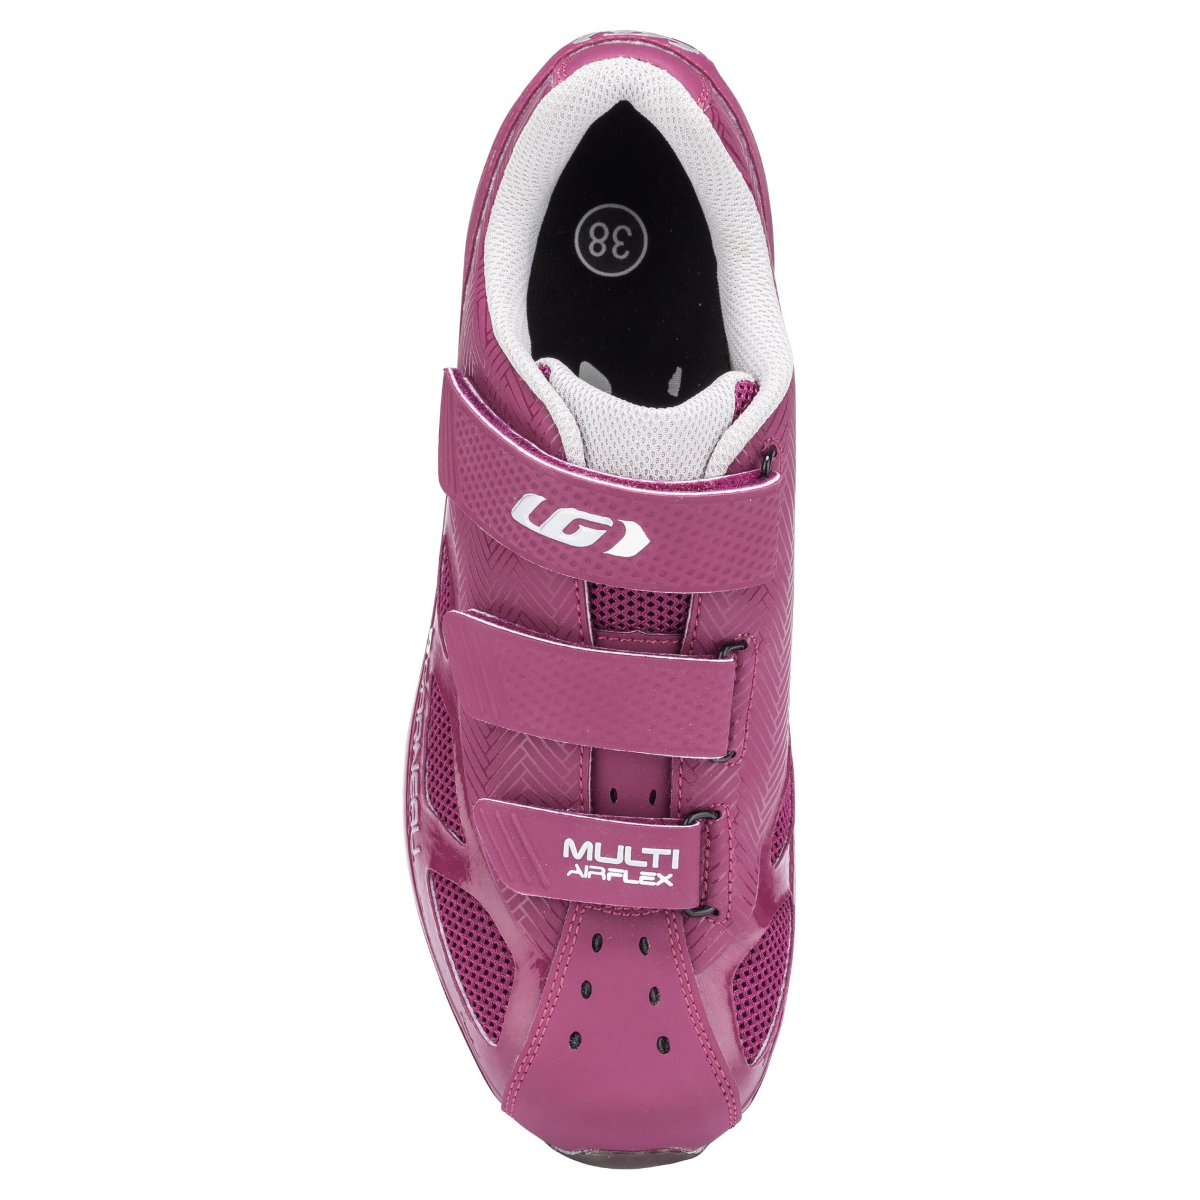 louis garneau women's multi air flex bike shoes